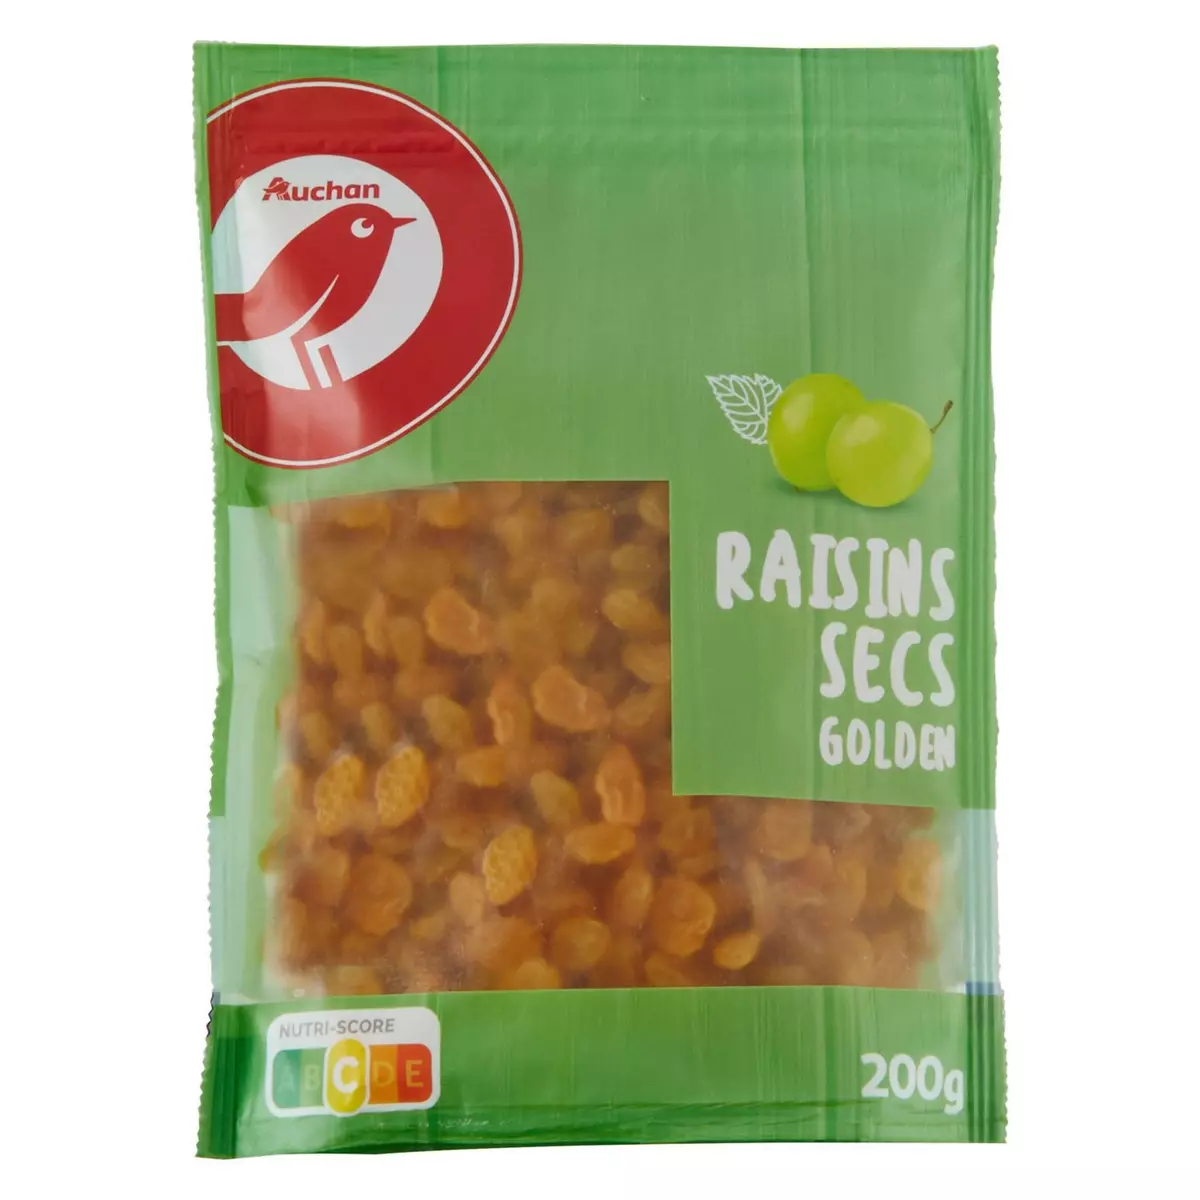 AUCHAN Raisins secs golden 200g